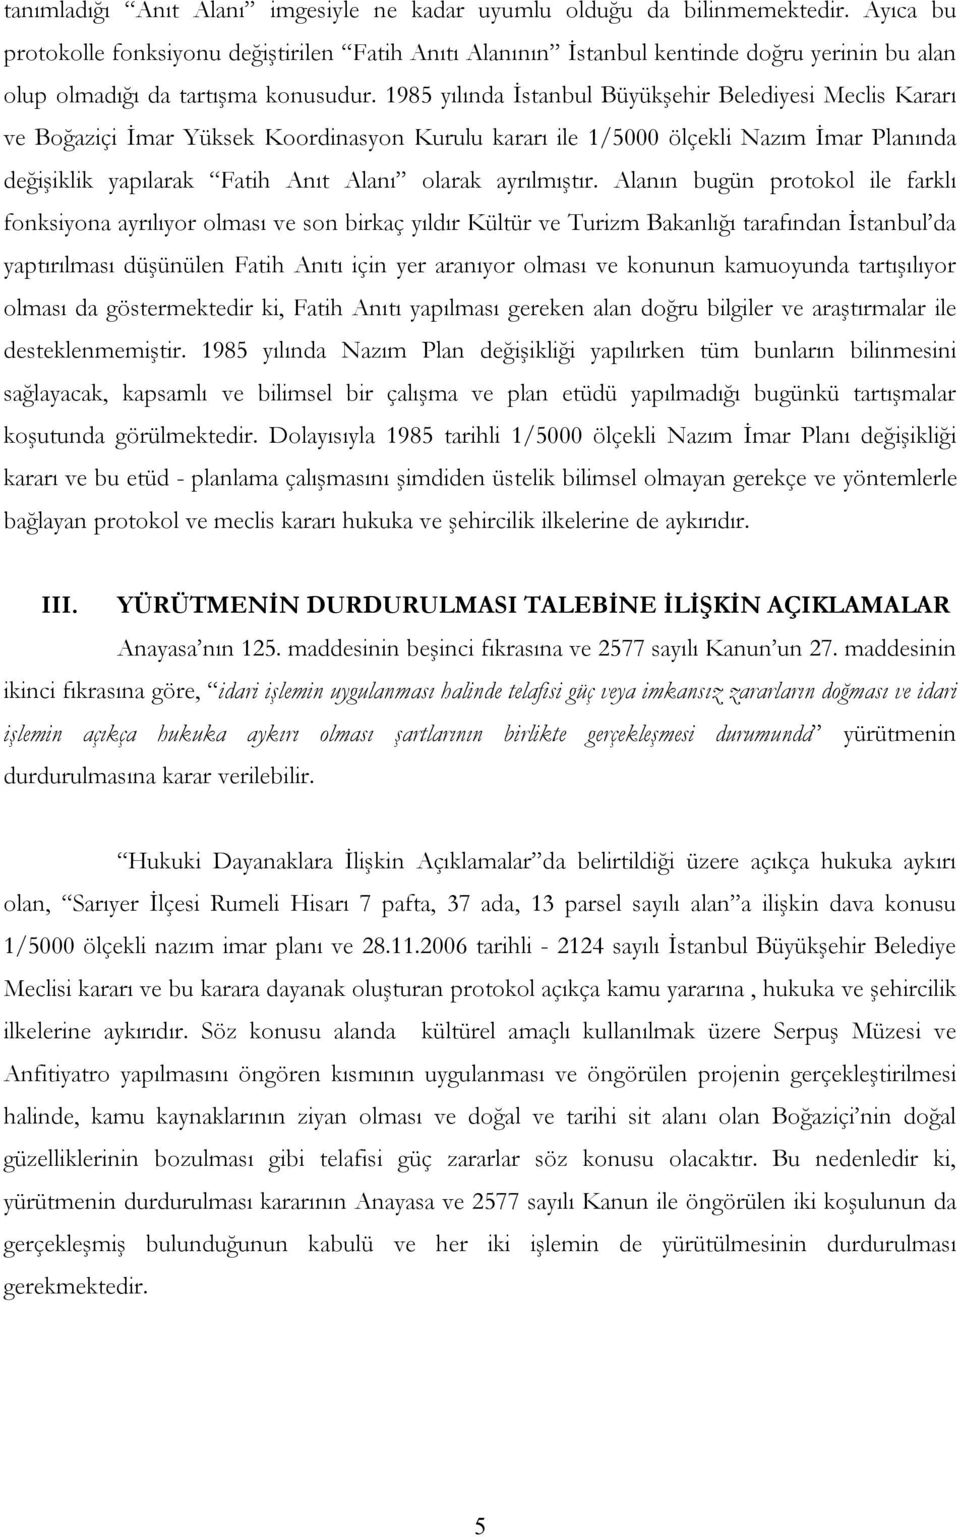 1985 yılında İstanbul Büyükşehir Belediyesi Meclis Kararı ve Boğaziçi İmar Yüksek Koordinasyon Kurulu kararı ile 1/5000 ölçekli Nazım İmar Planında değişiklik yapılarak Fatih Anıt Alanı olarak